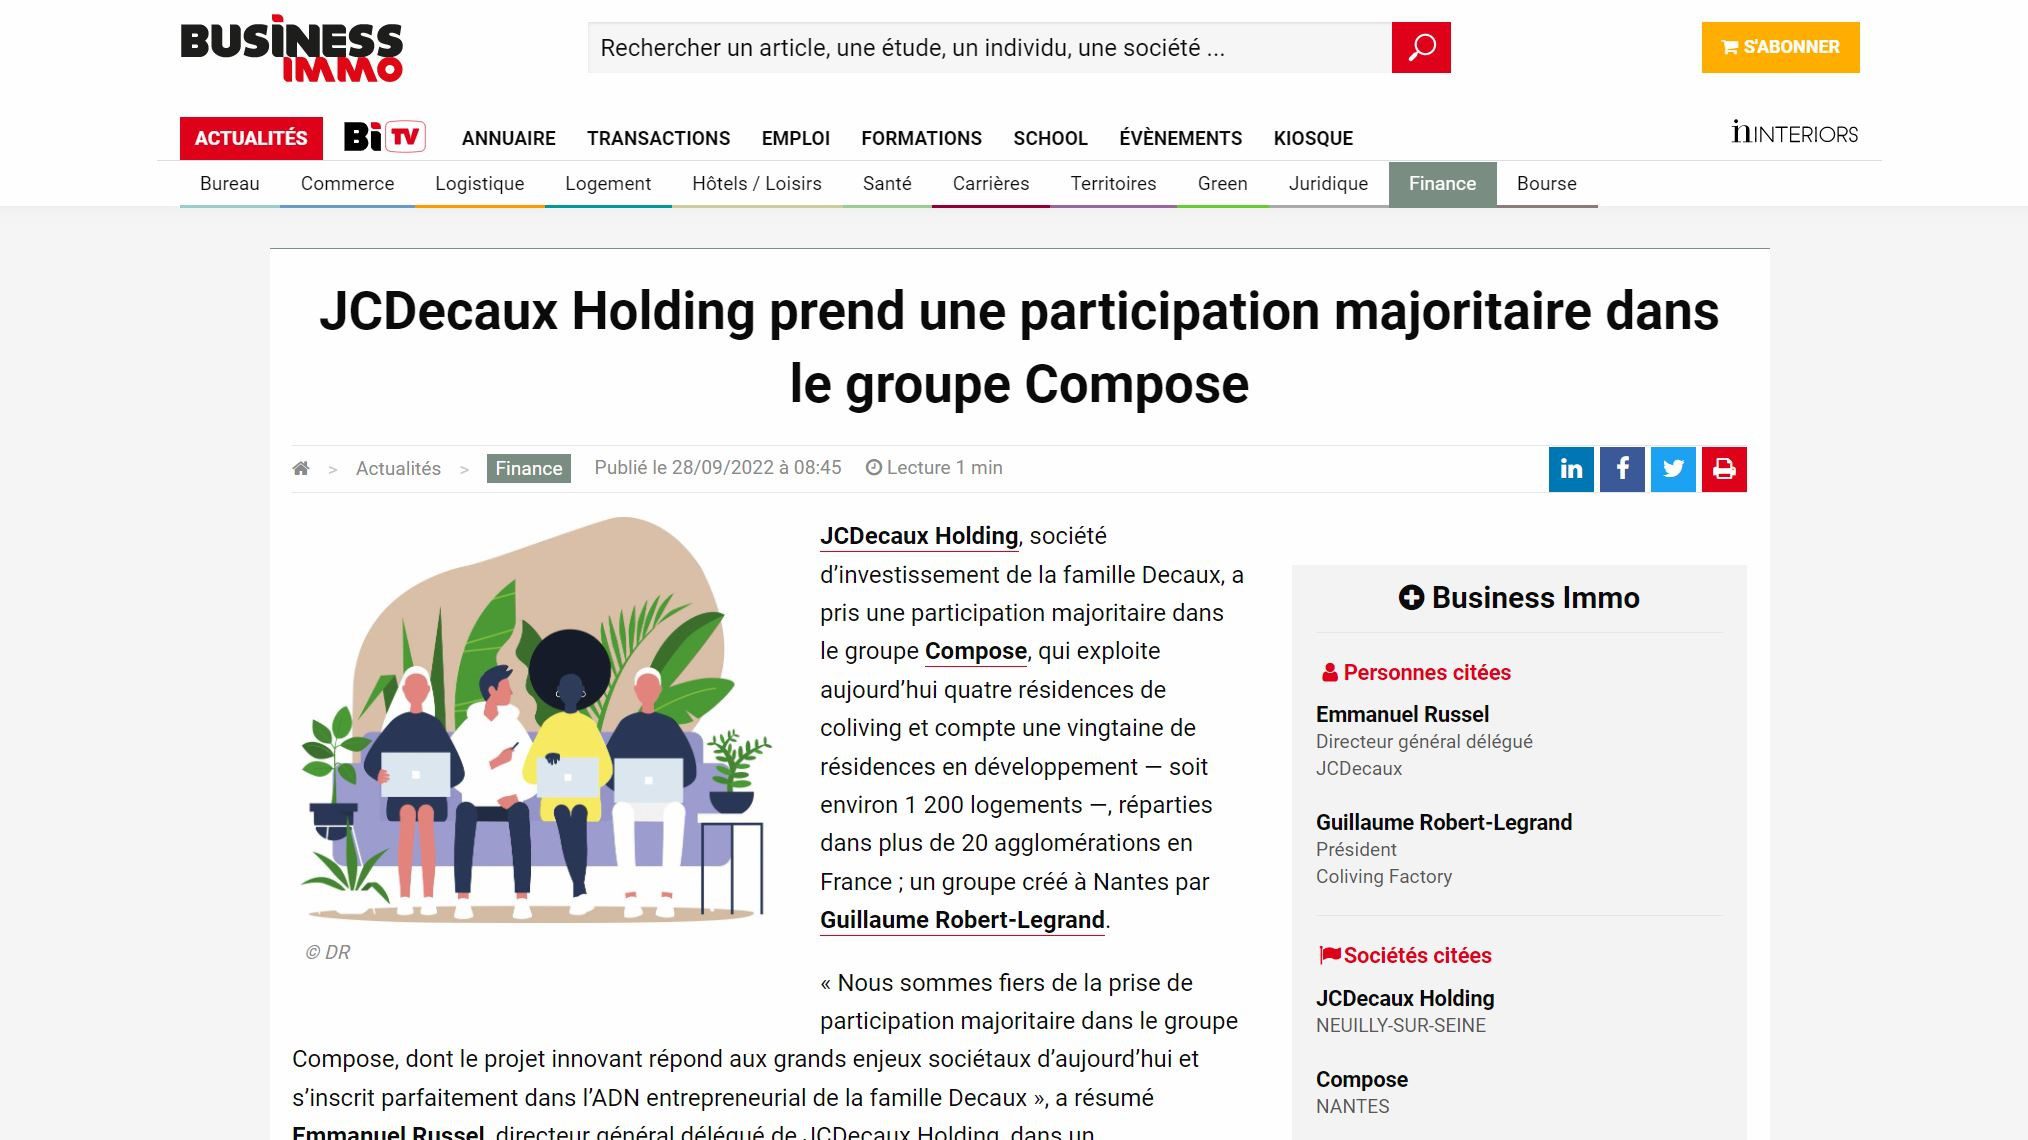 JCDecaux Holding prend une participation majoritaire dans le groupe Compose
